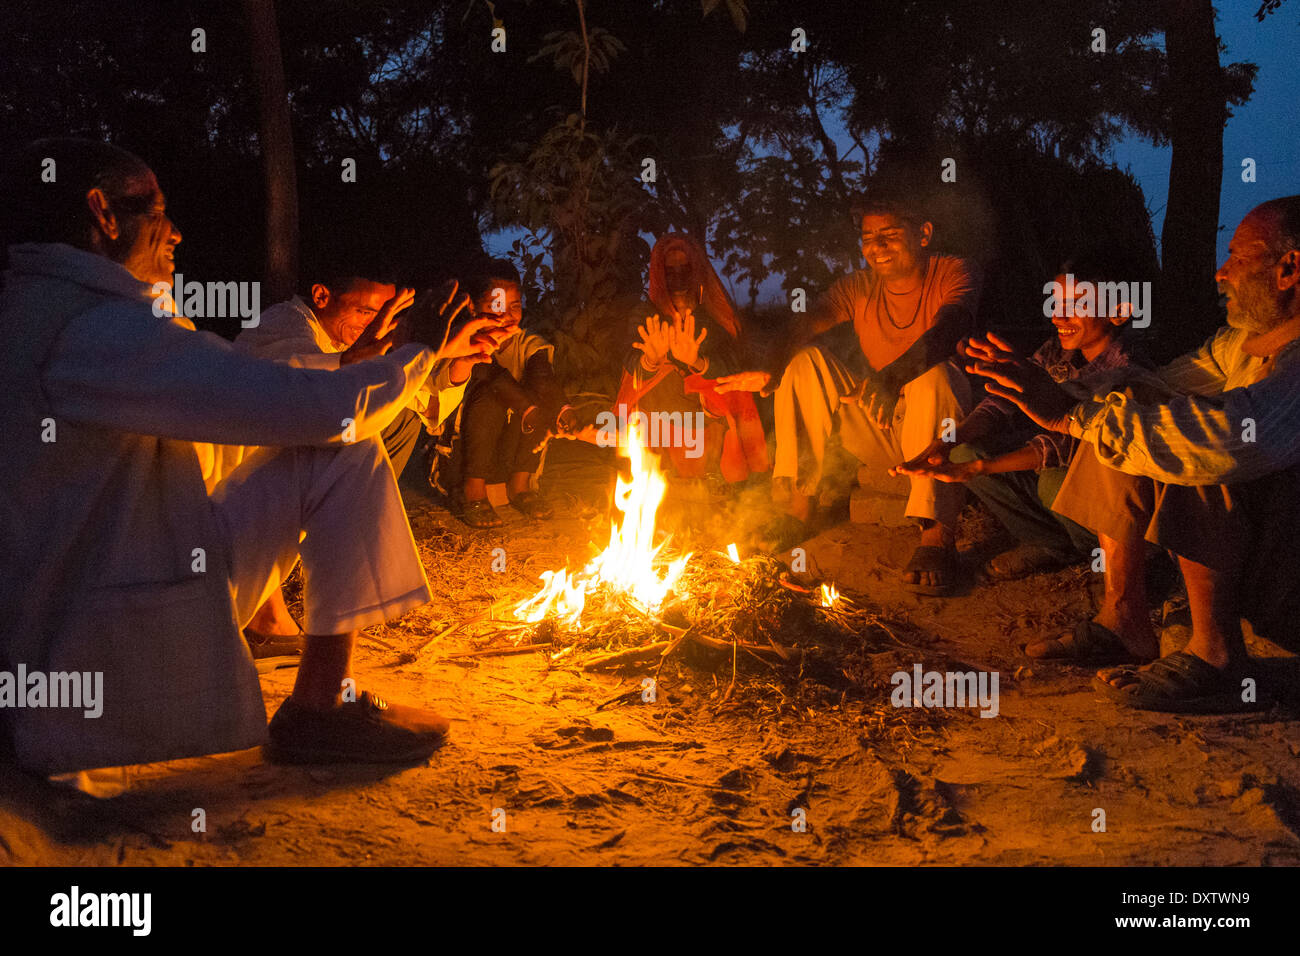 Indien, Uttar Pradesh, Familie sitzt um offenes Feuer in der Abenddämmerung Stockfoto